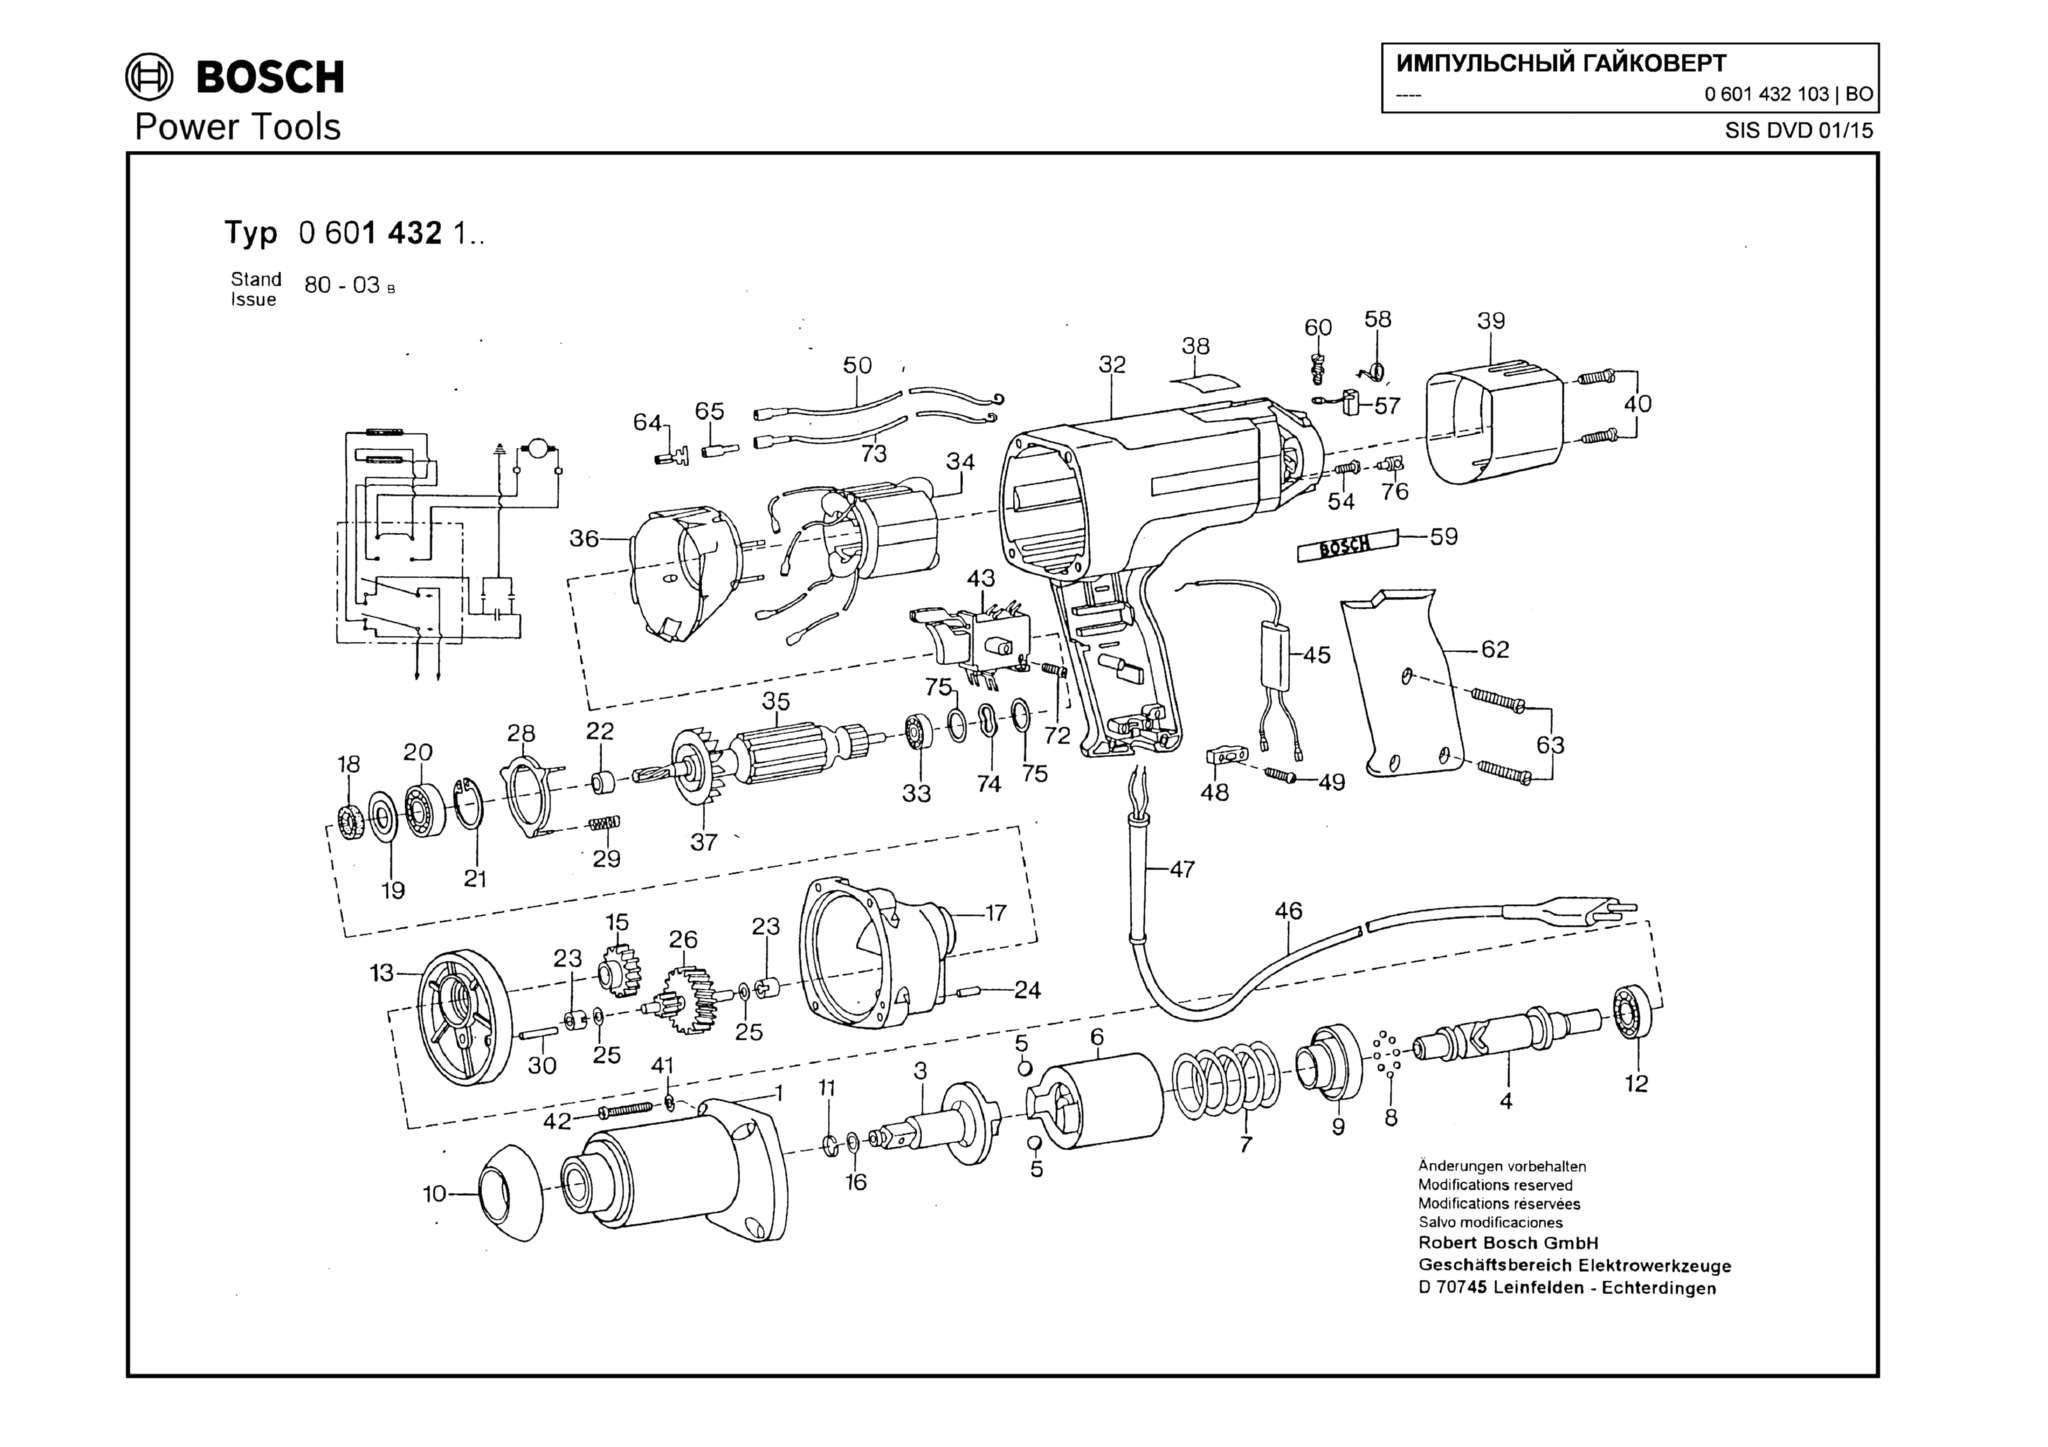 Запчасти, схема и деталировка Bosch (ТИП 0601432103)